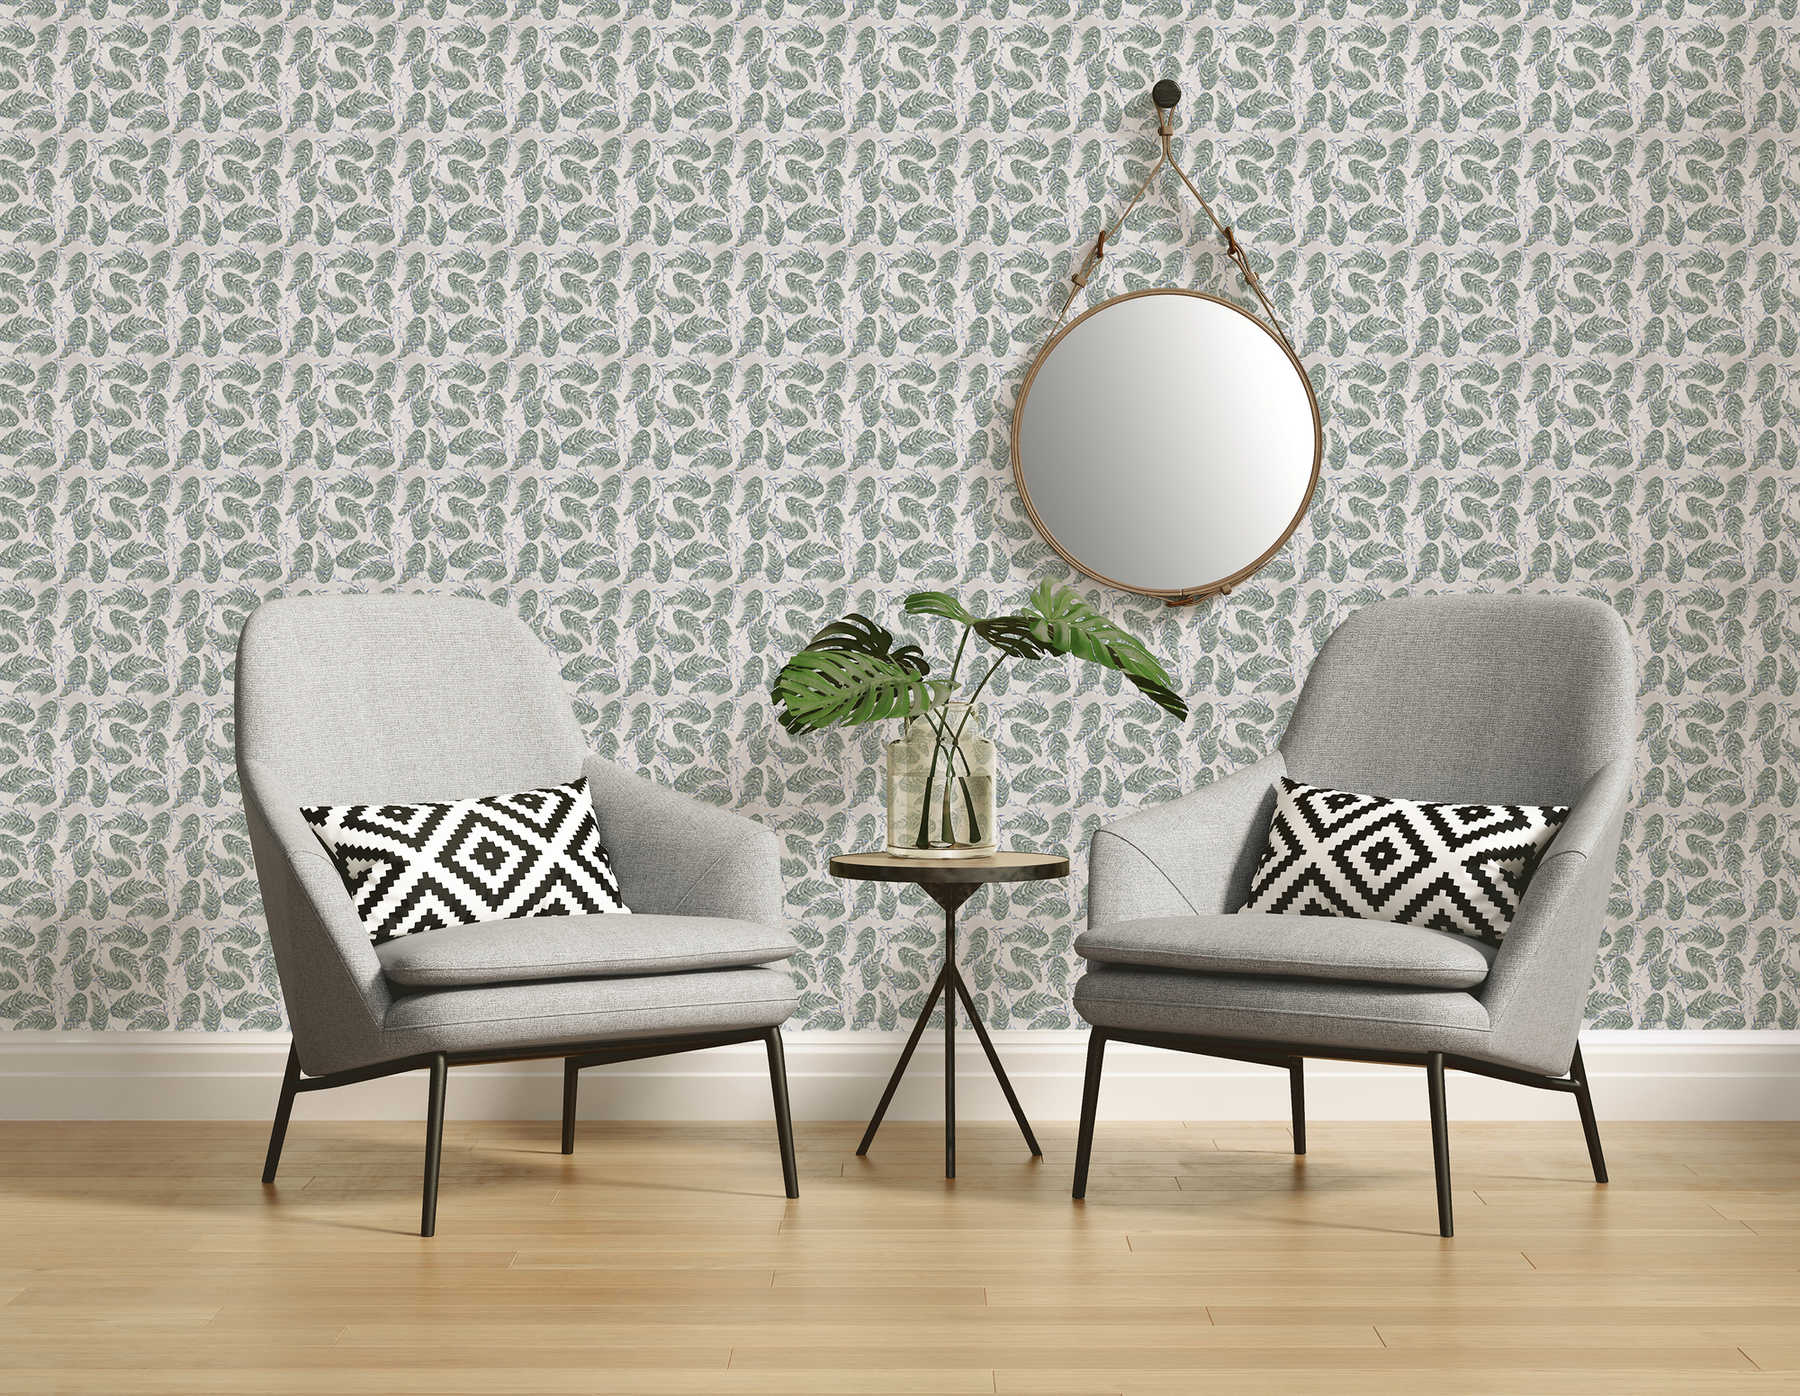             Design Fototapete mit floralem Muster in Grau und Grün auf Strukturvlies
        